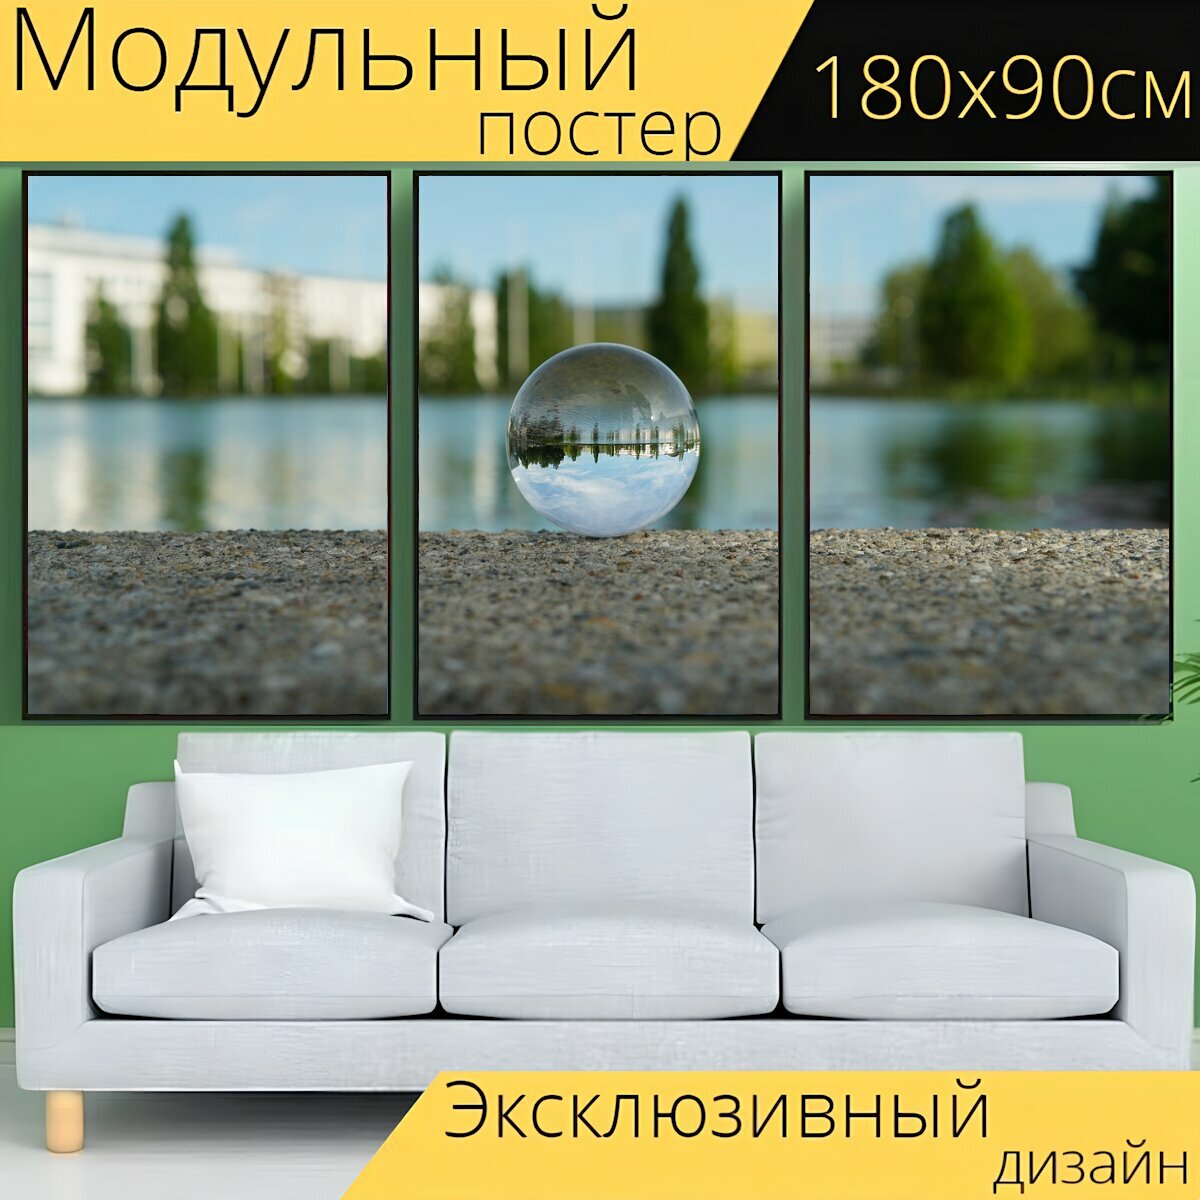 Модульный постер "Мяч объектив, отражение, зеркальное отображение" 180 x 90 см. для интерьера